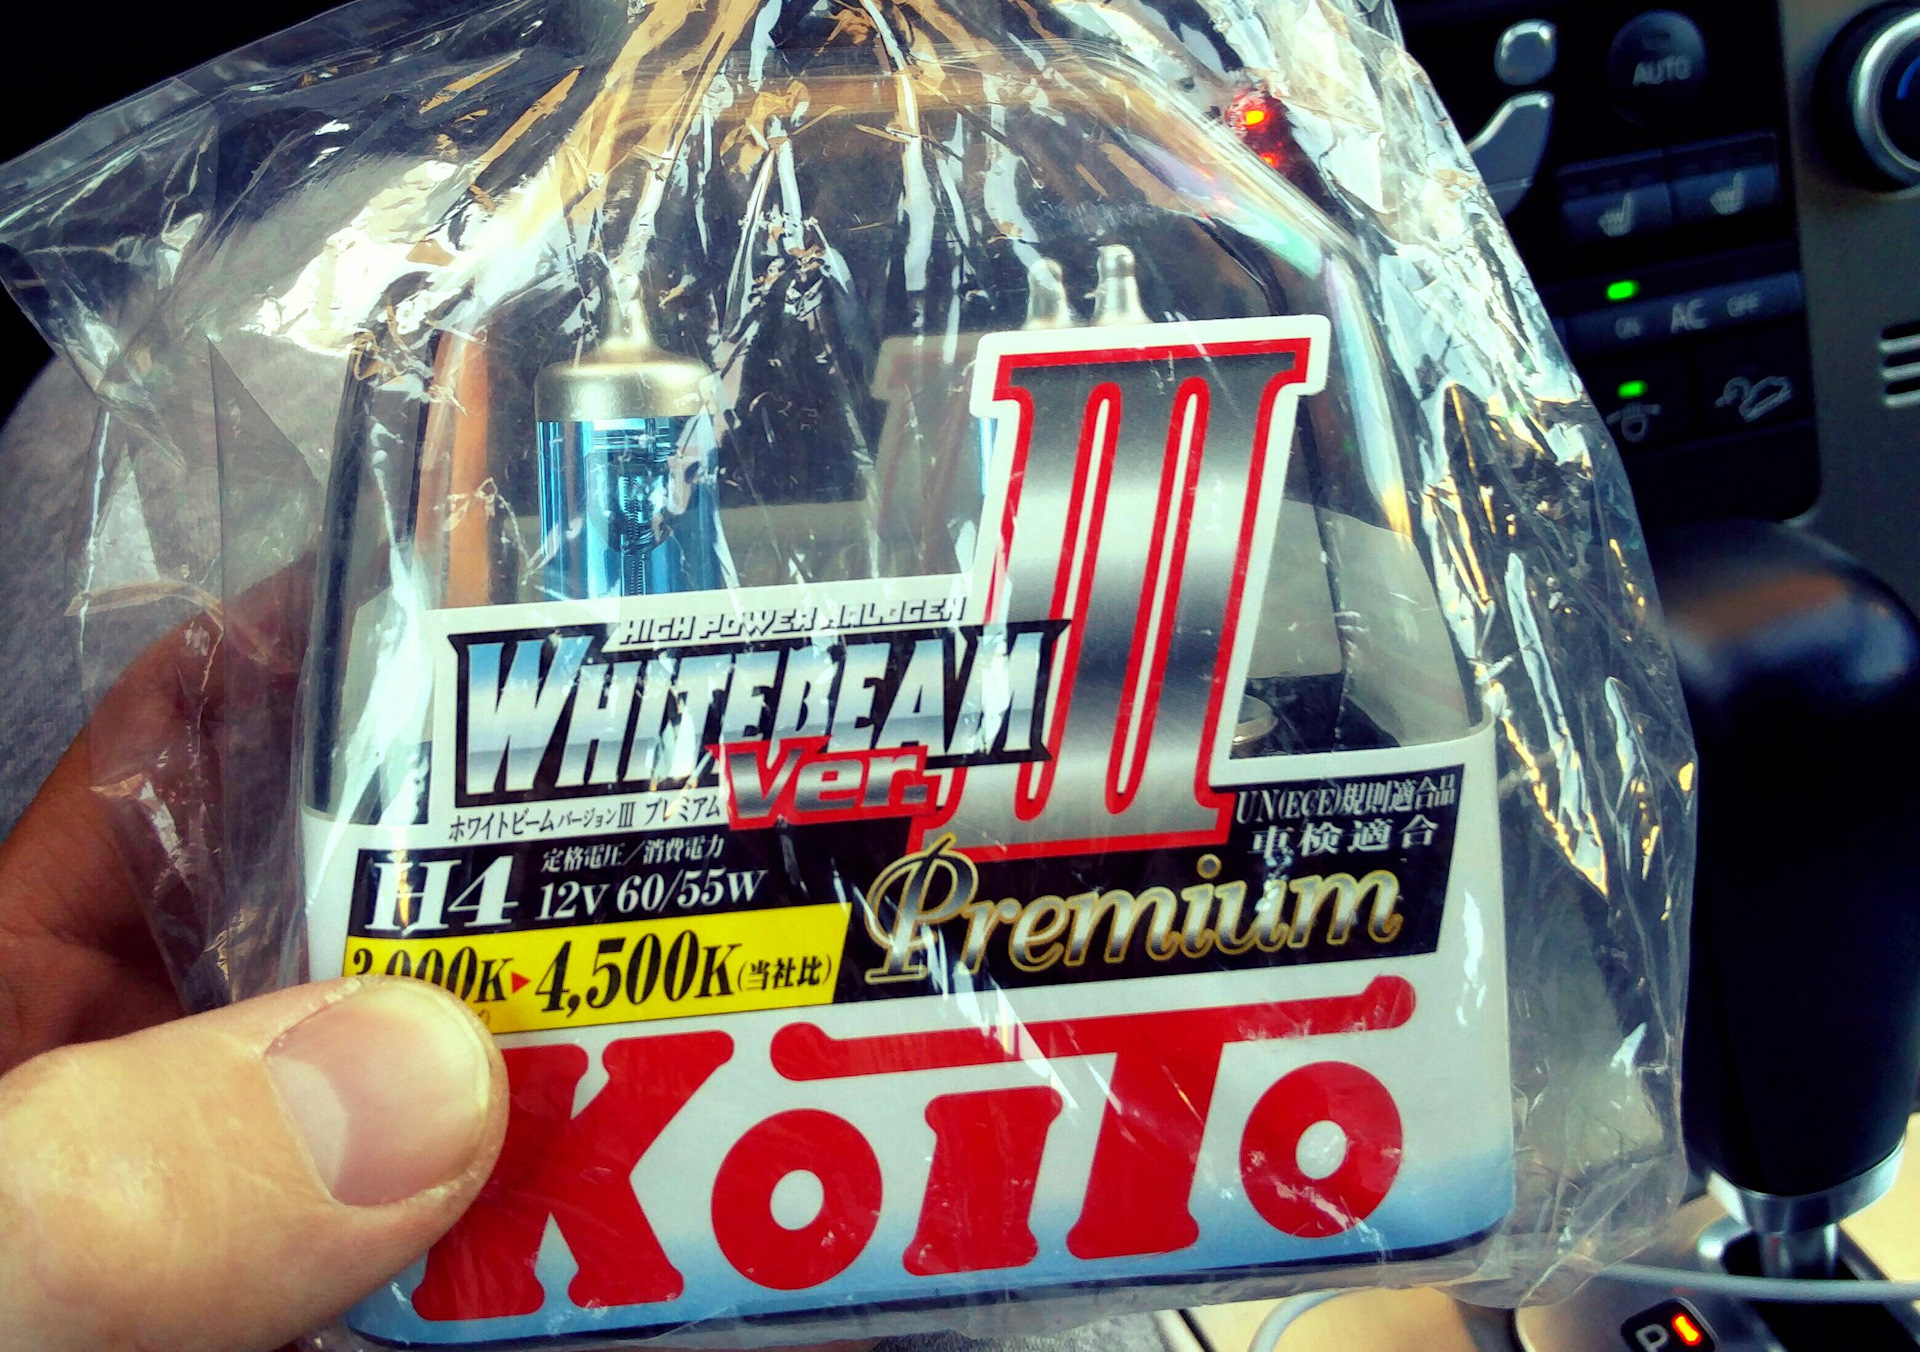 Koito Whitebeam h4. Koito Whitebeam h4 4500k. Koito w5w Whitebeam. Whitebeam для ноутбука. Koito whitebeam 12v 55w